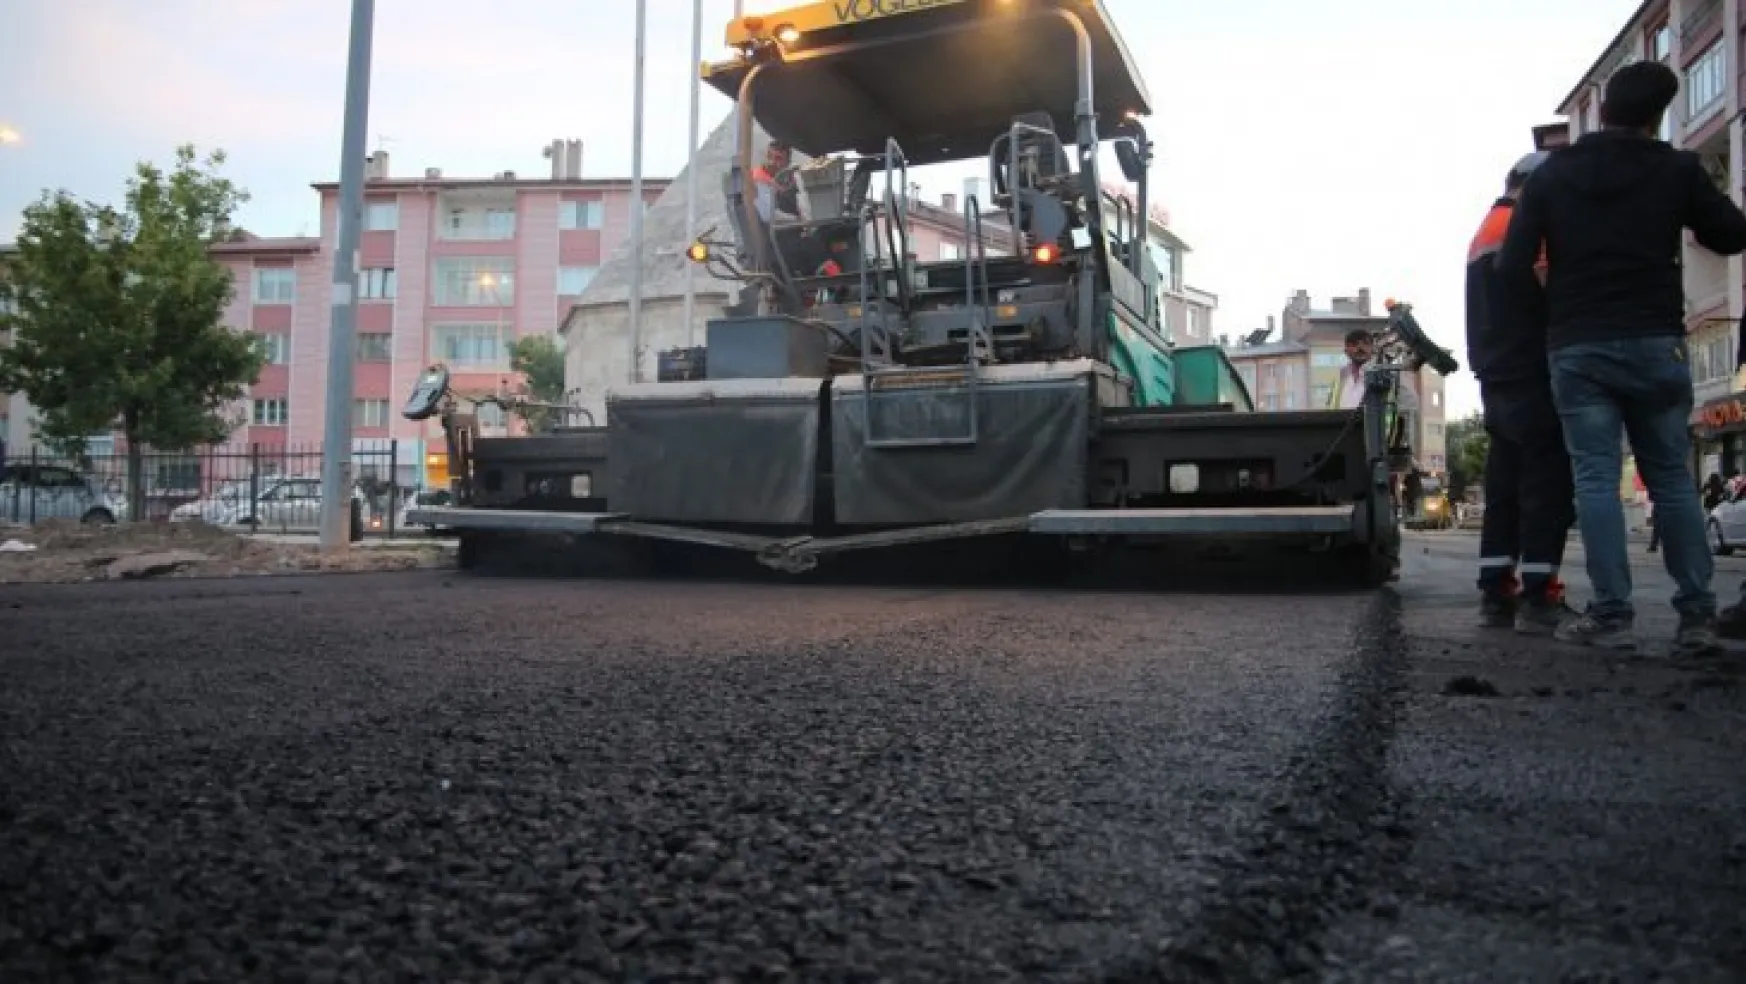 Sivas Belediyesi şehir içi ulaşımı konforlu hale getiriyor